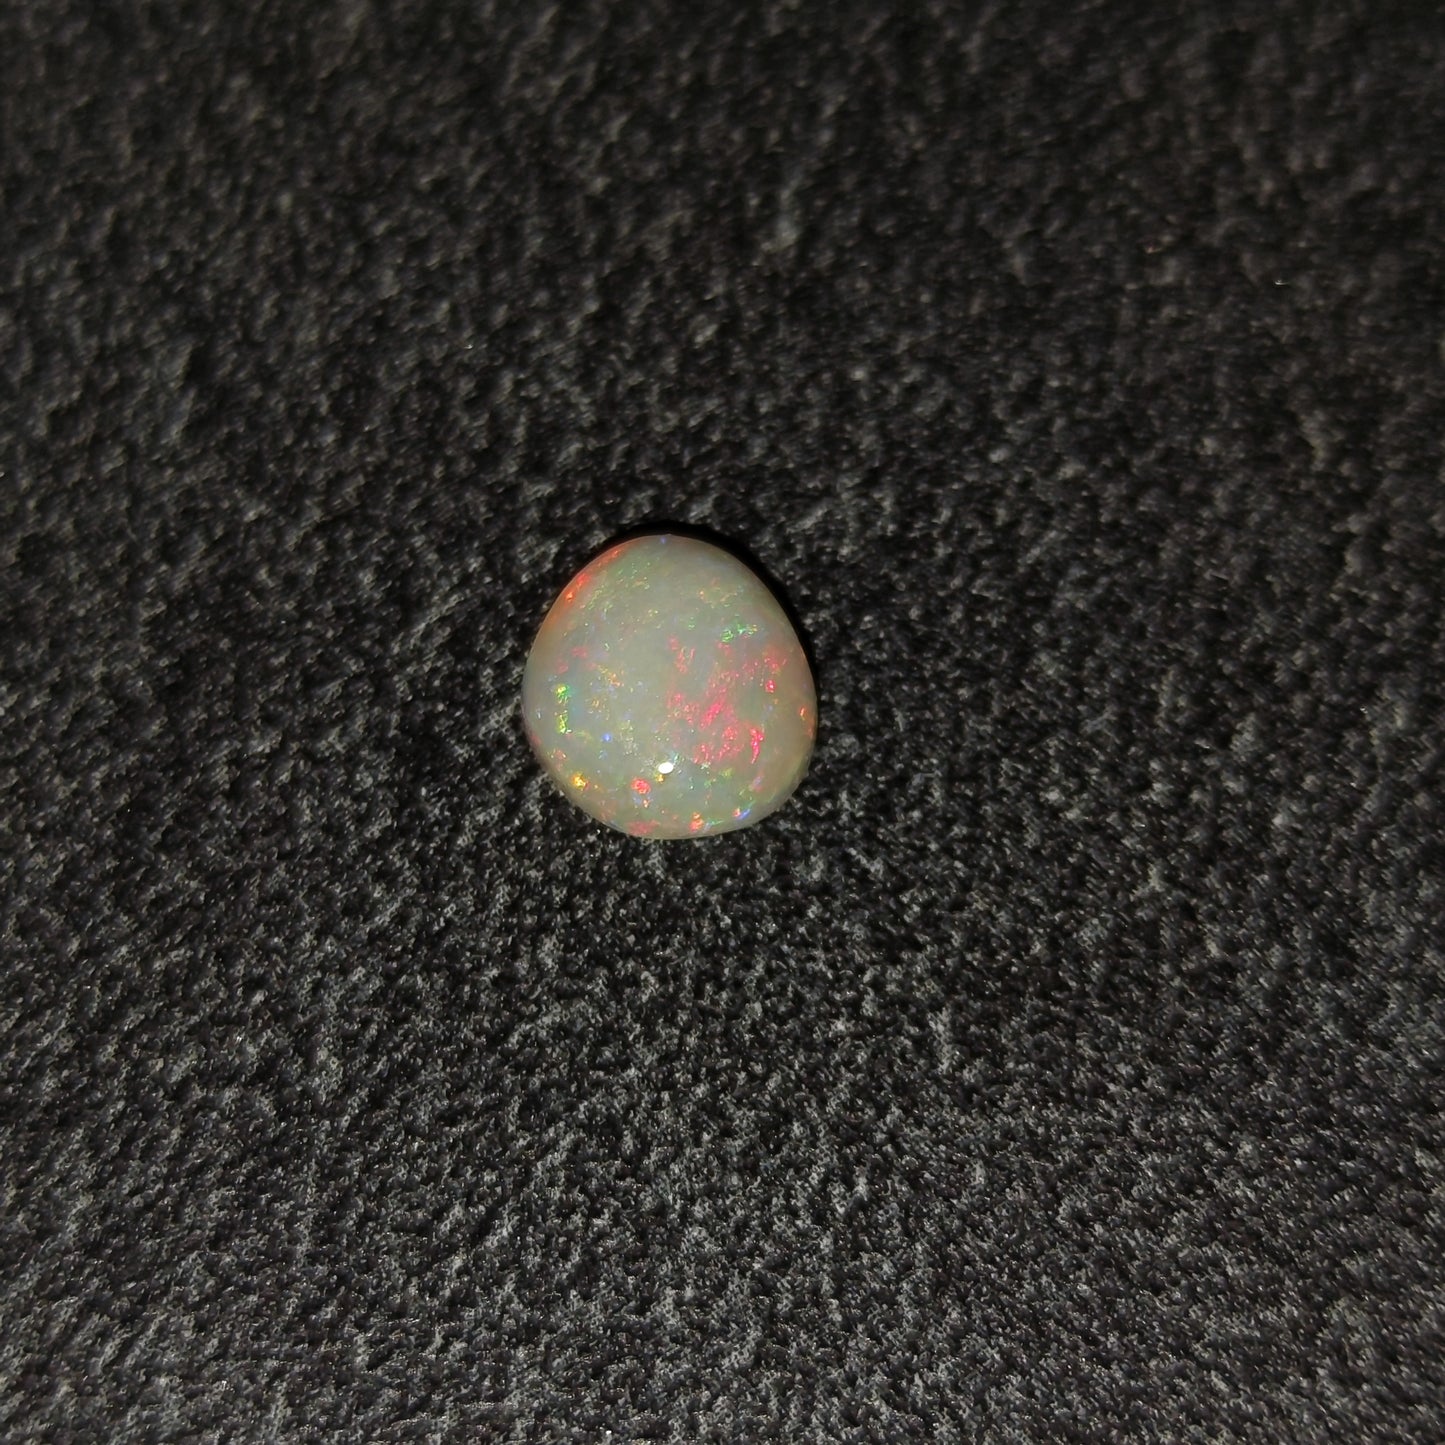 Opale laiteuse Australienne 1,35ct